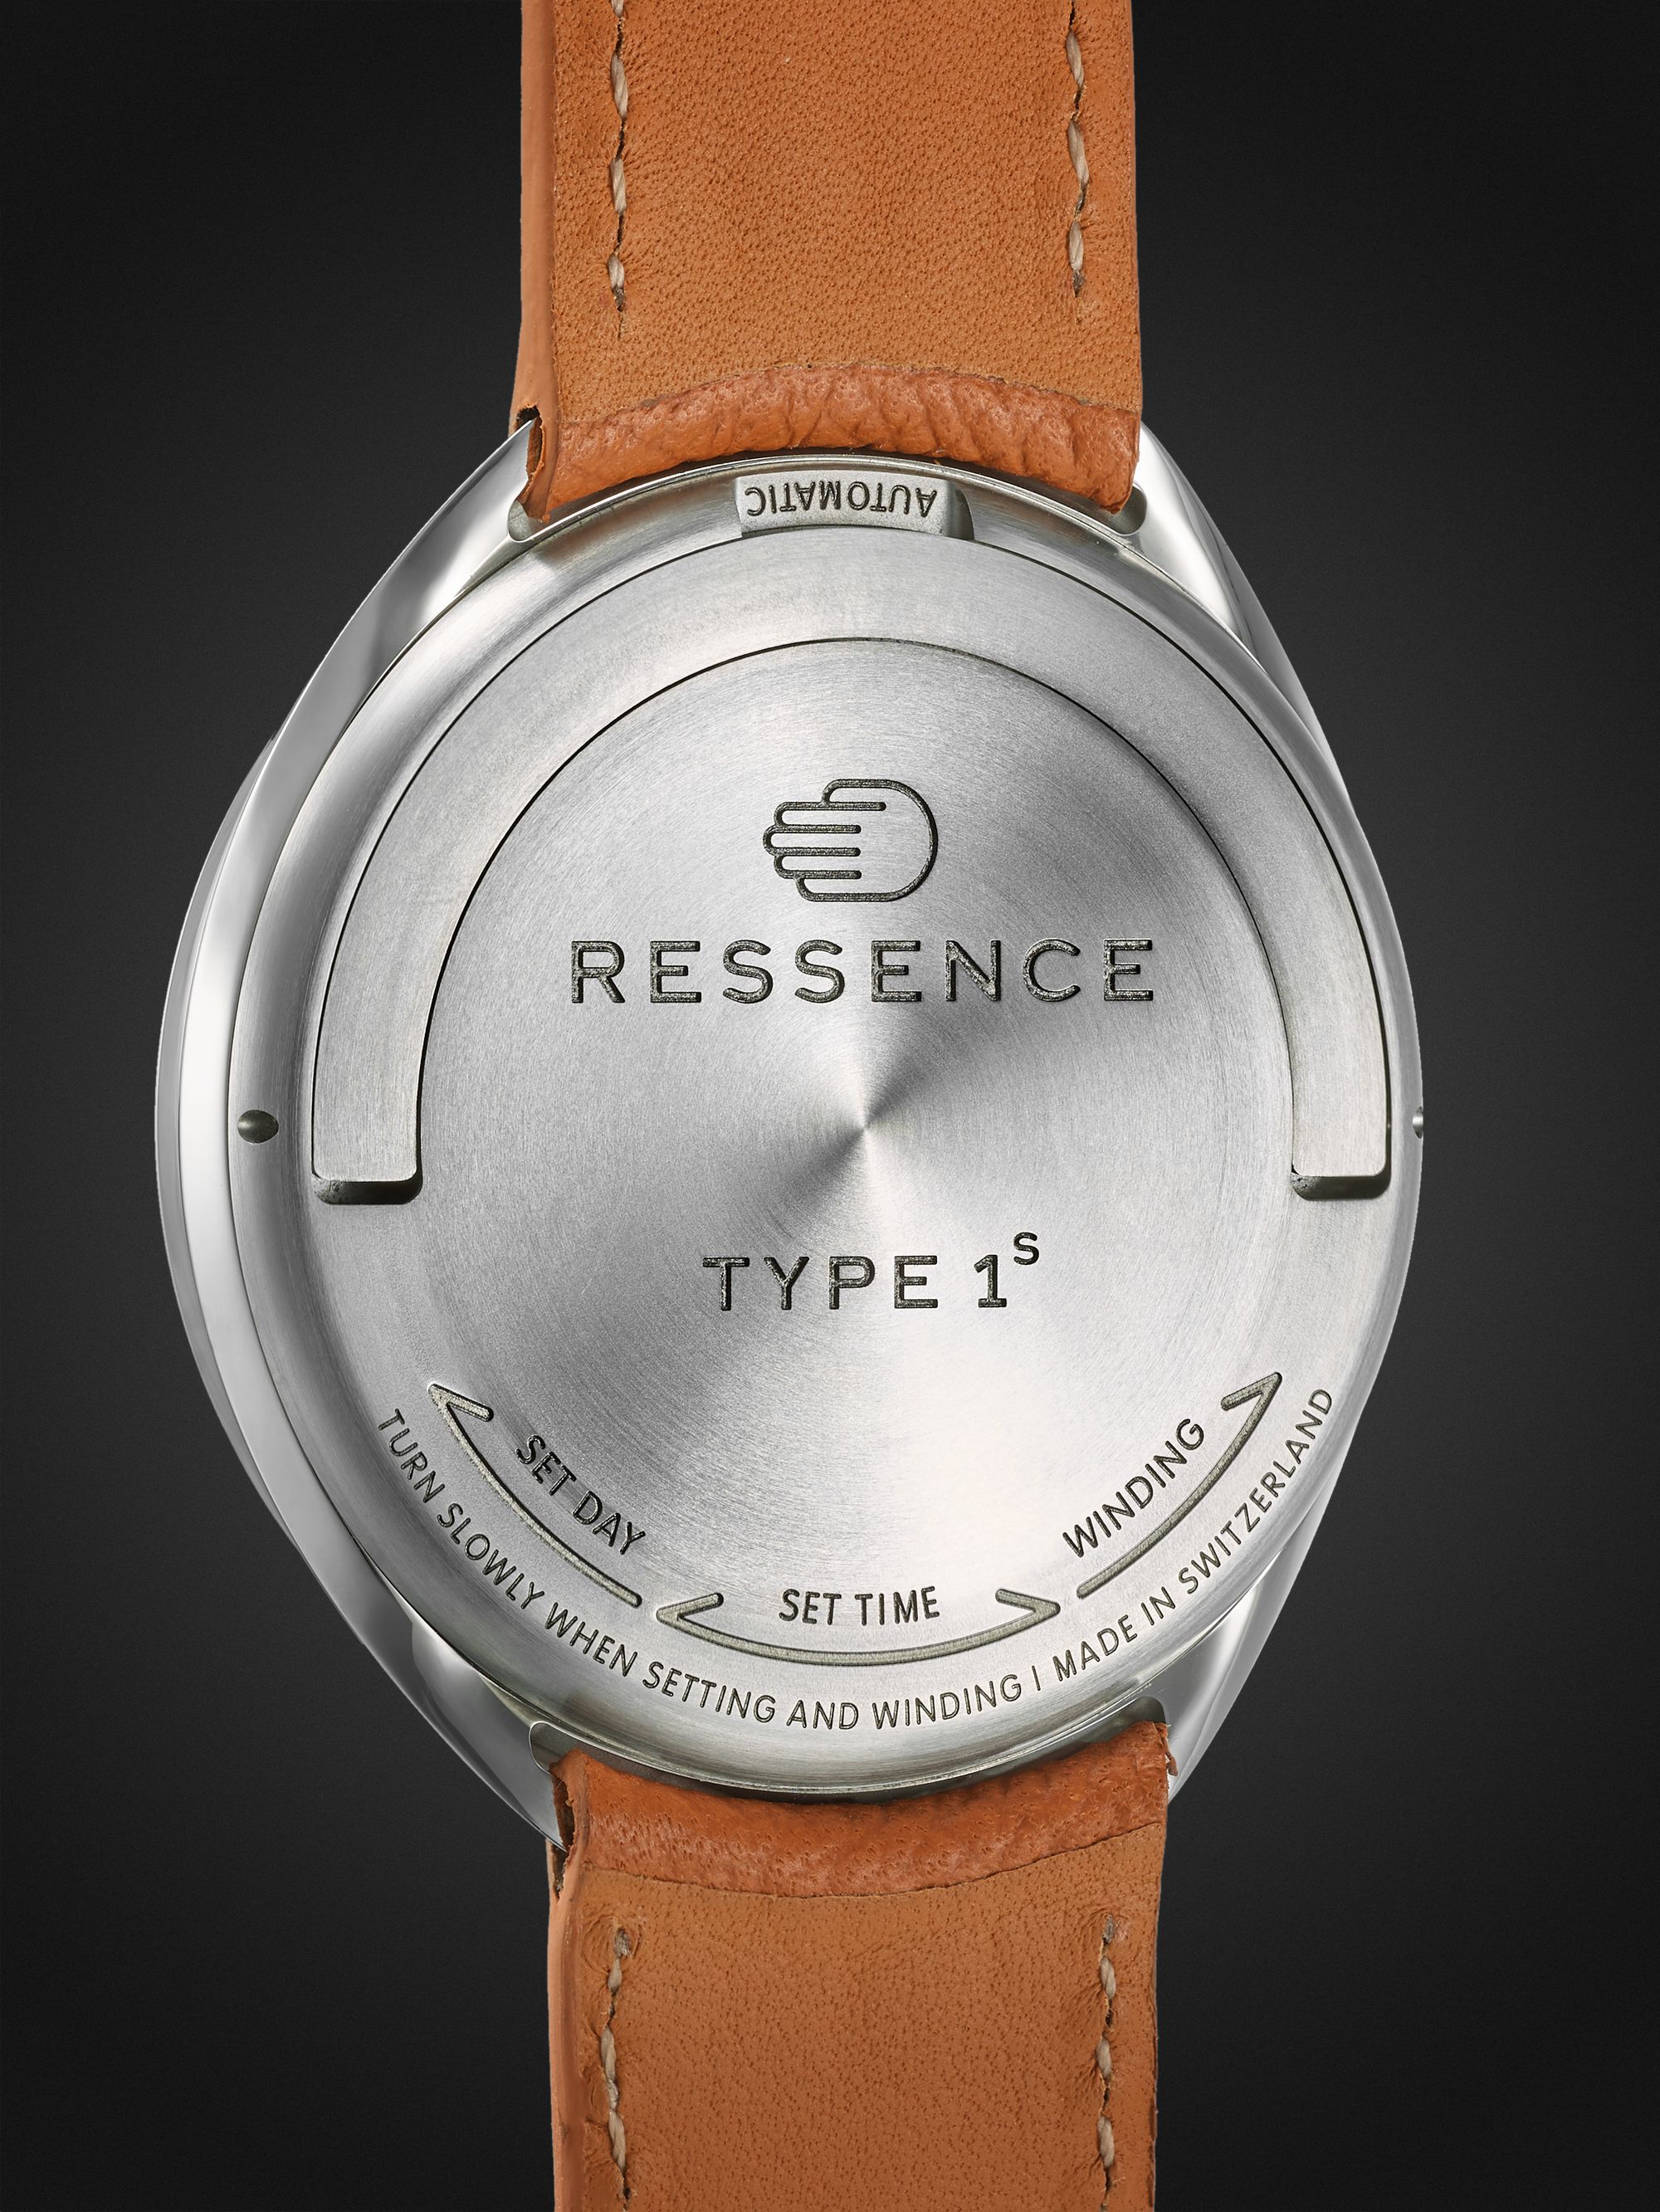 RESSENCE Type 1 – 42 mm Uhr aus Titan mit mechanischem Aufzug und Straußenlederarmband, Ref.-Nr.: TYP 1W